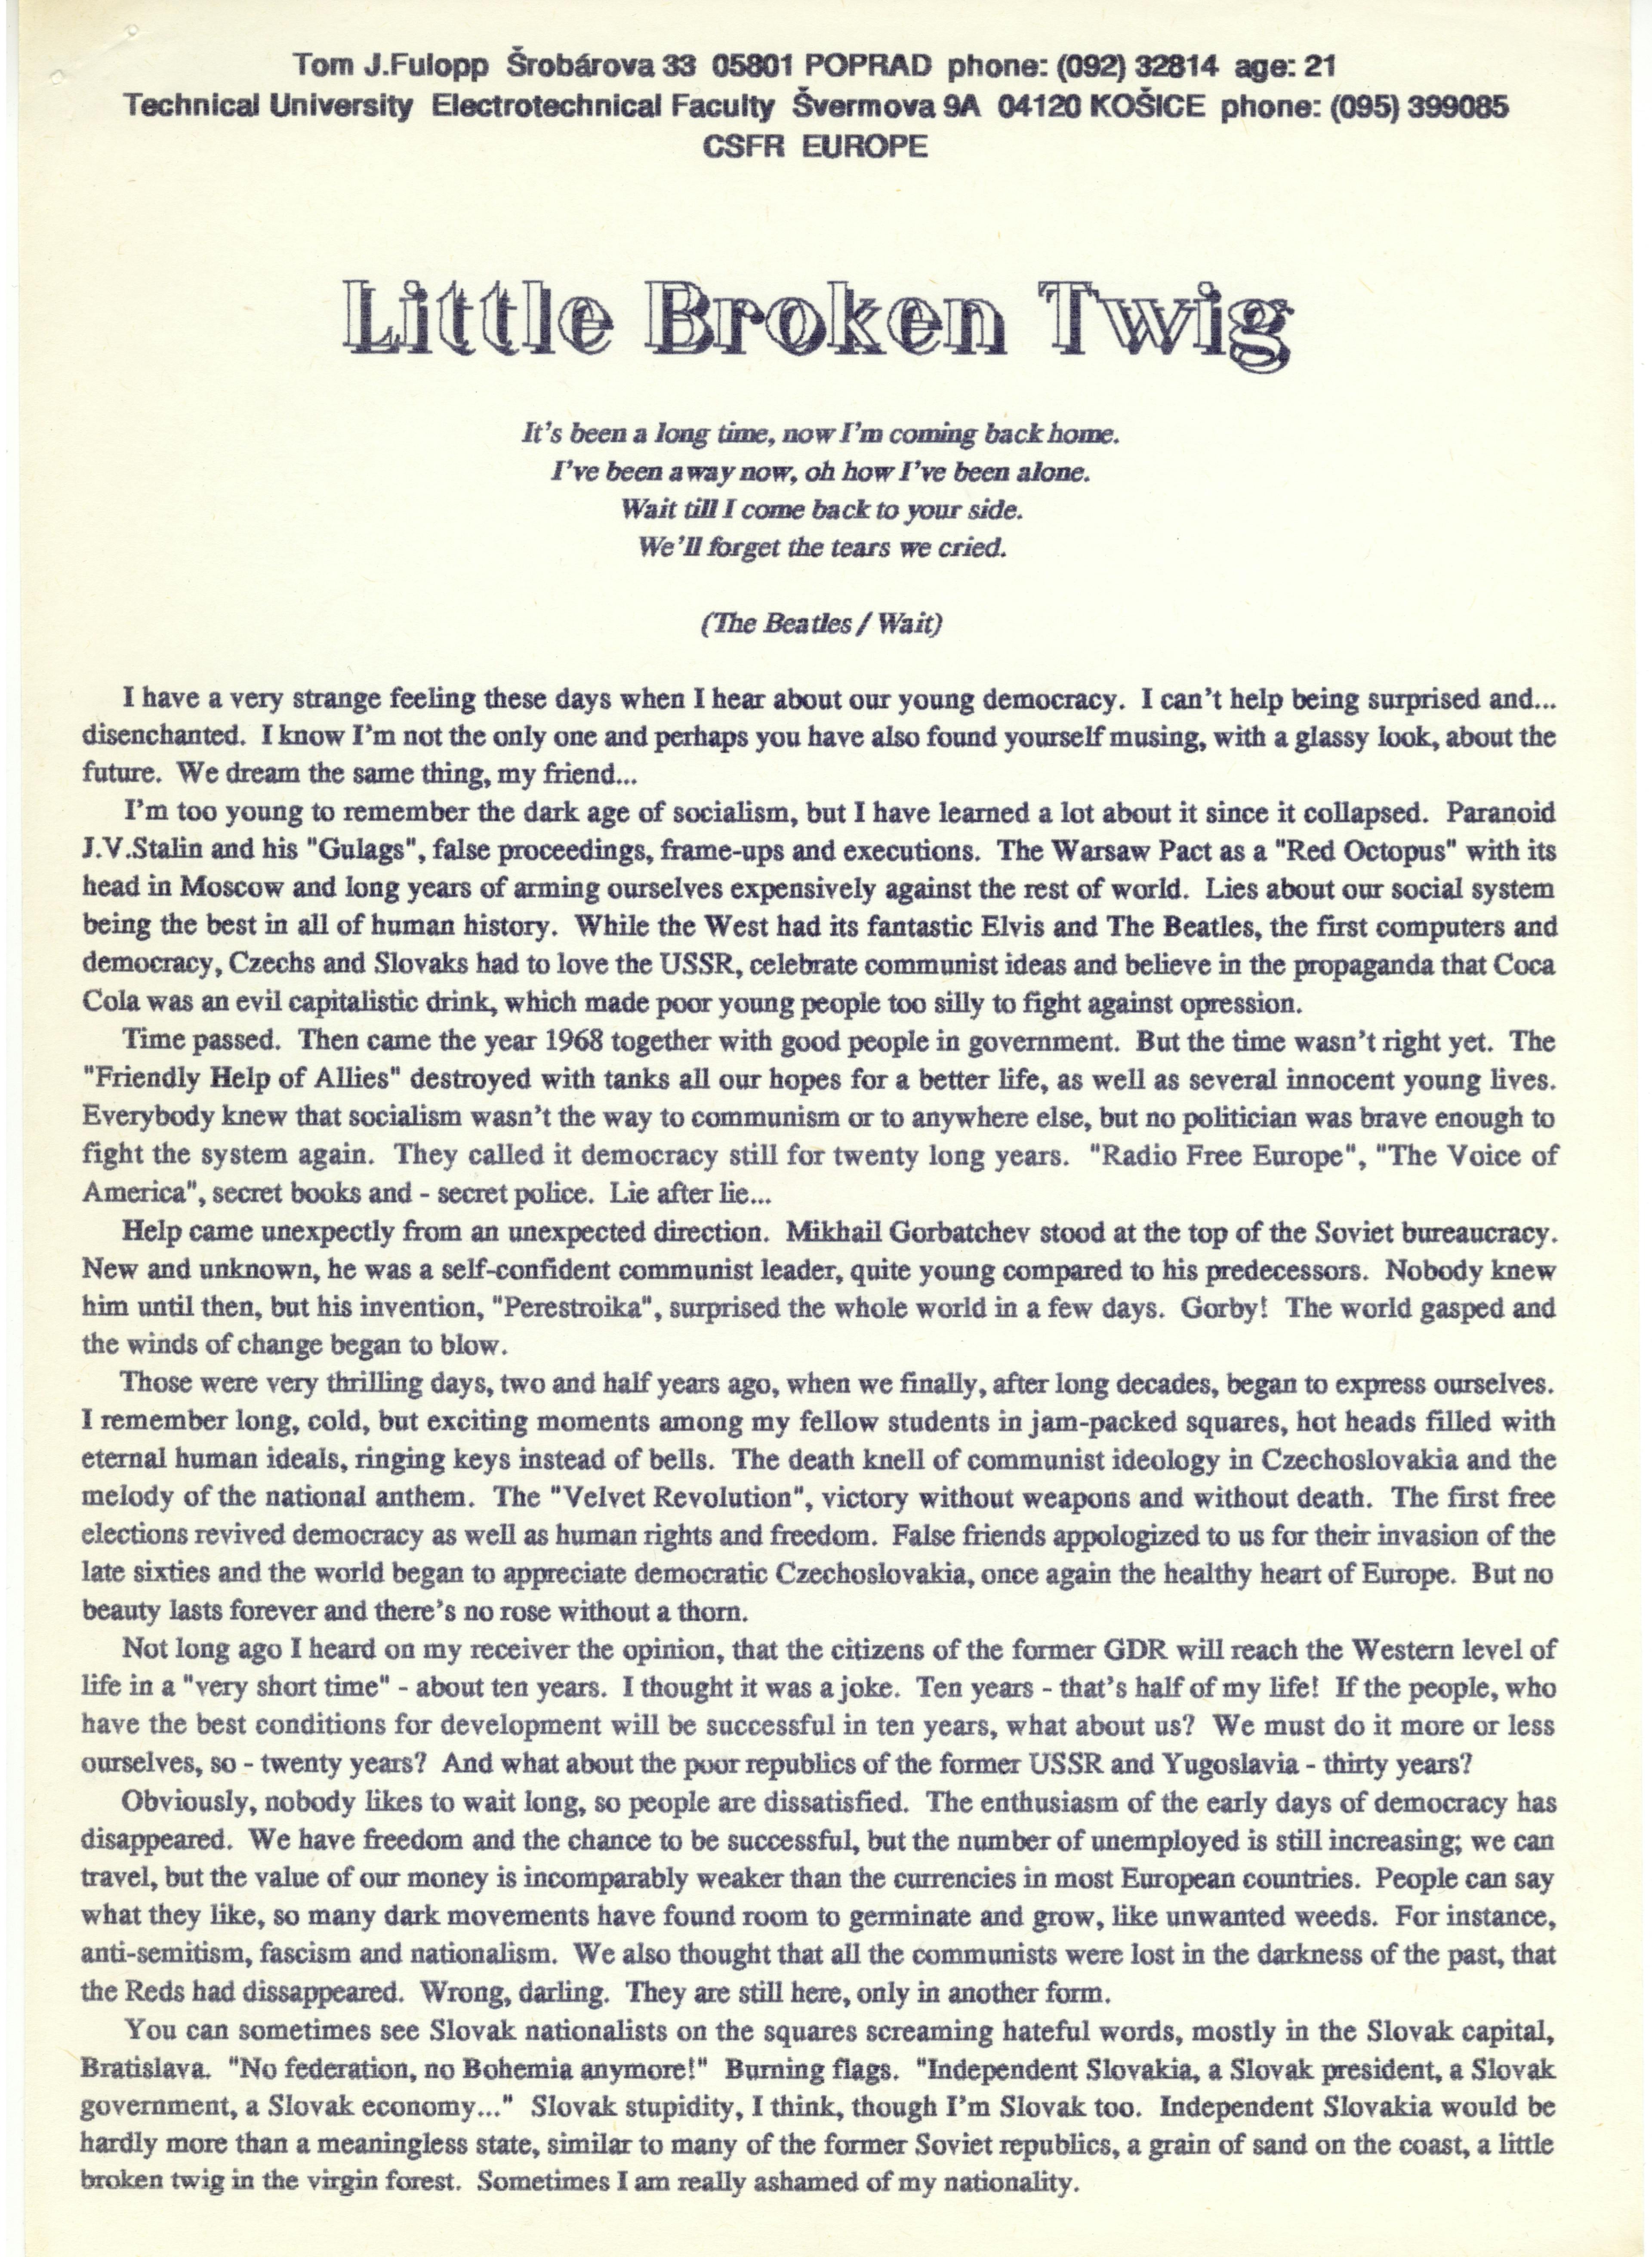 Original printout of the essay